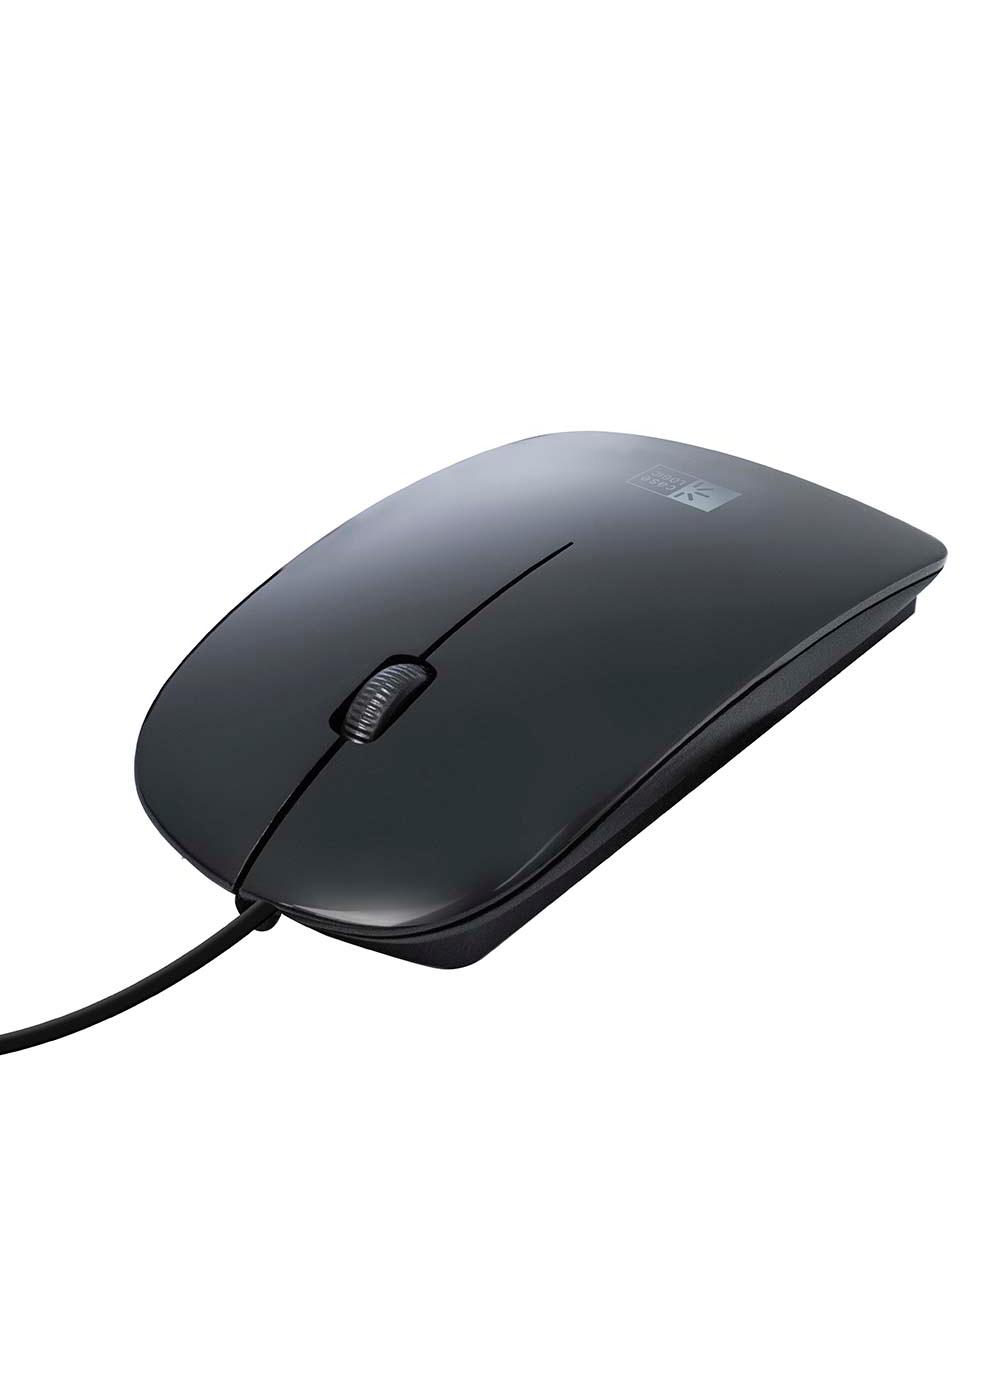 Case Logic Black Universal Gel MousePad - Shop Keyboards & Mice at H-E-B